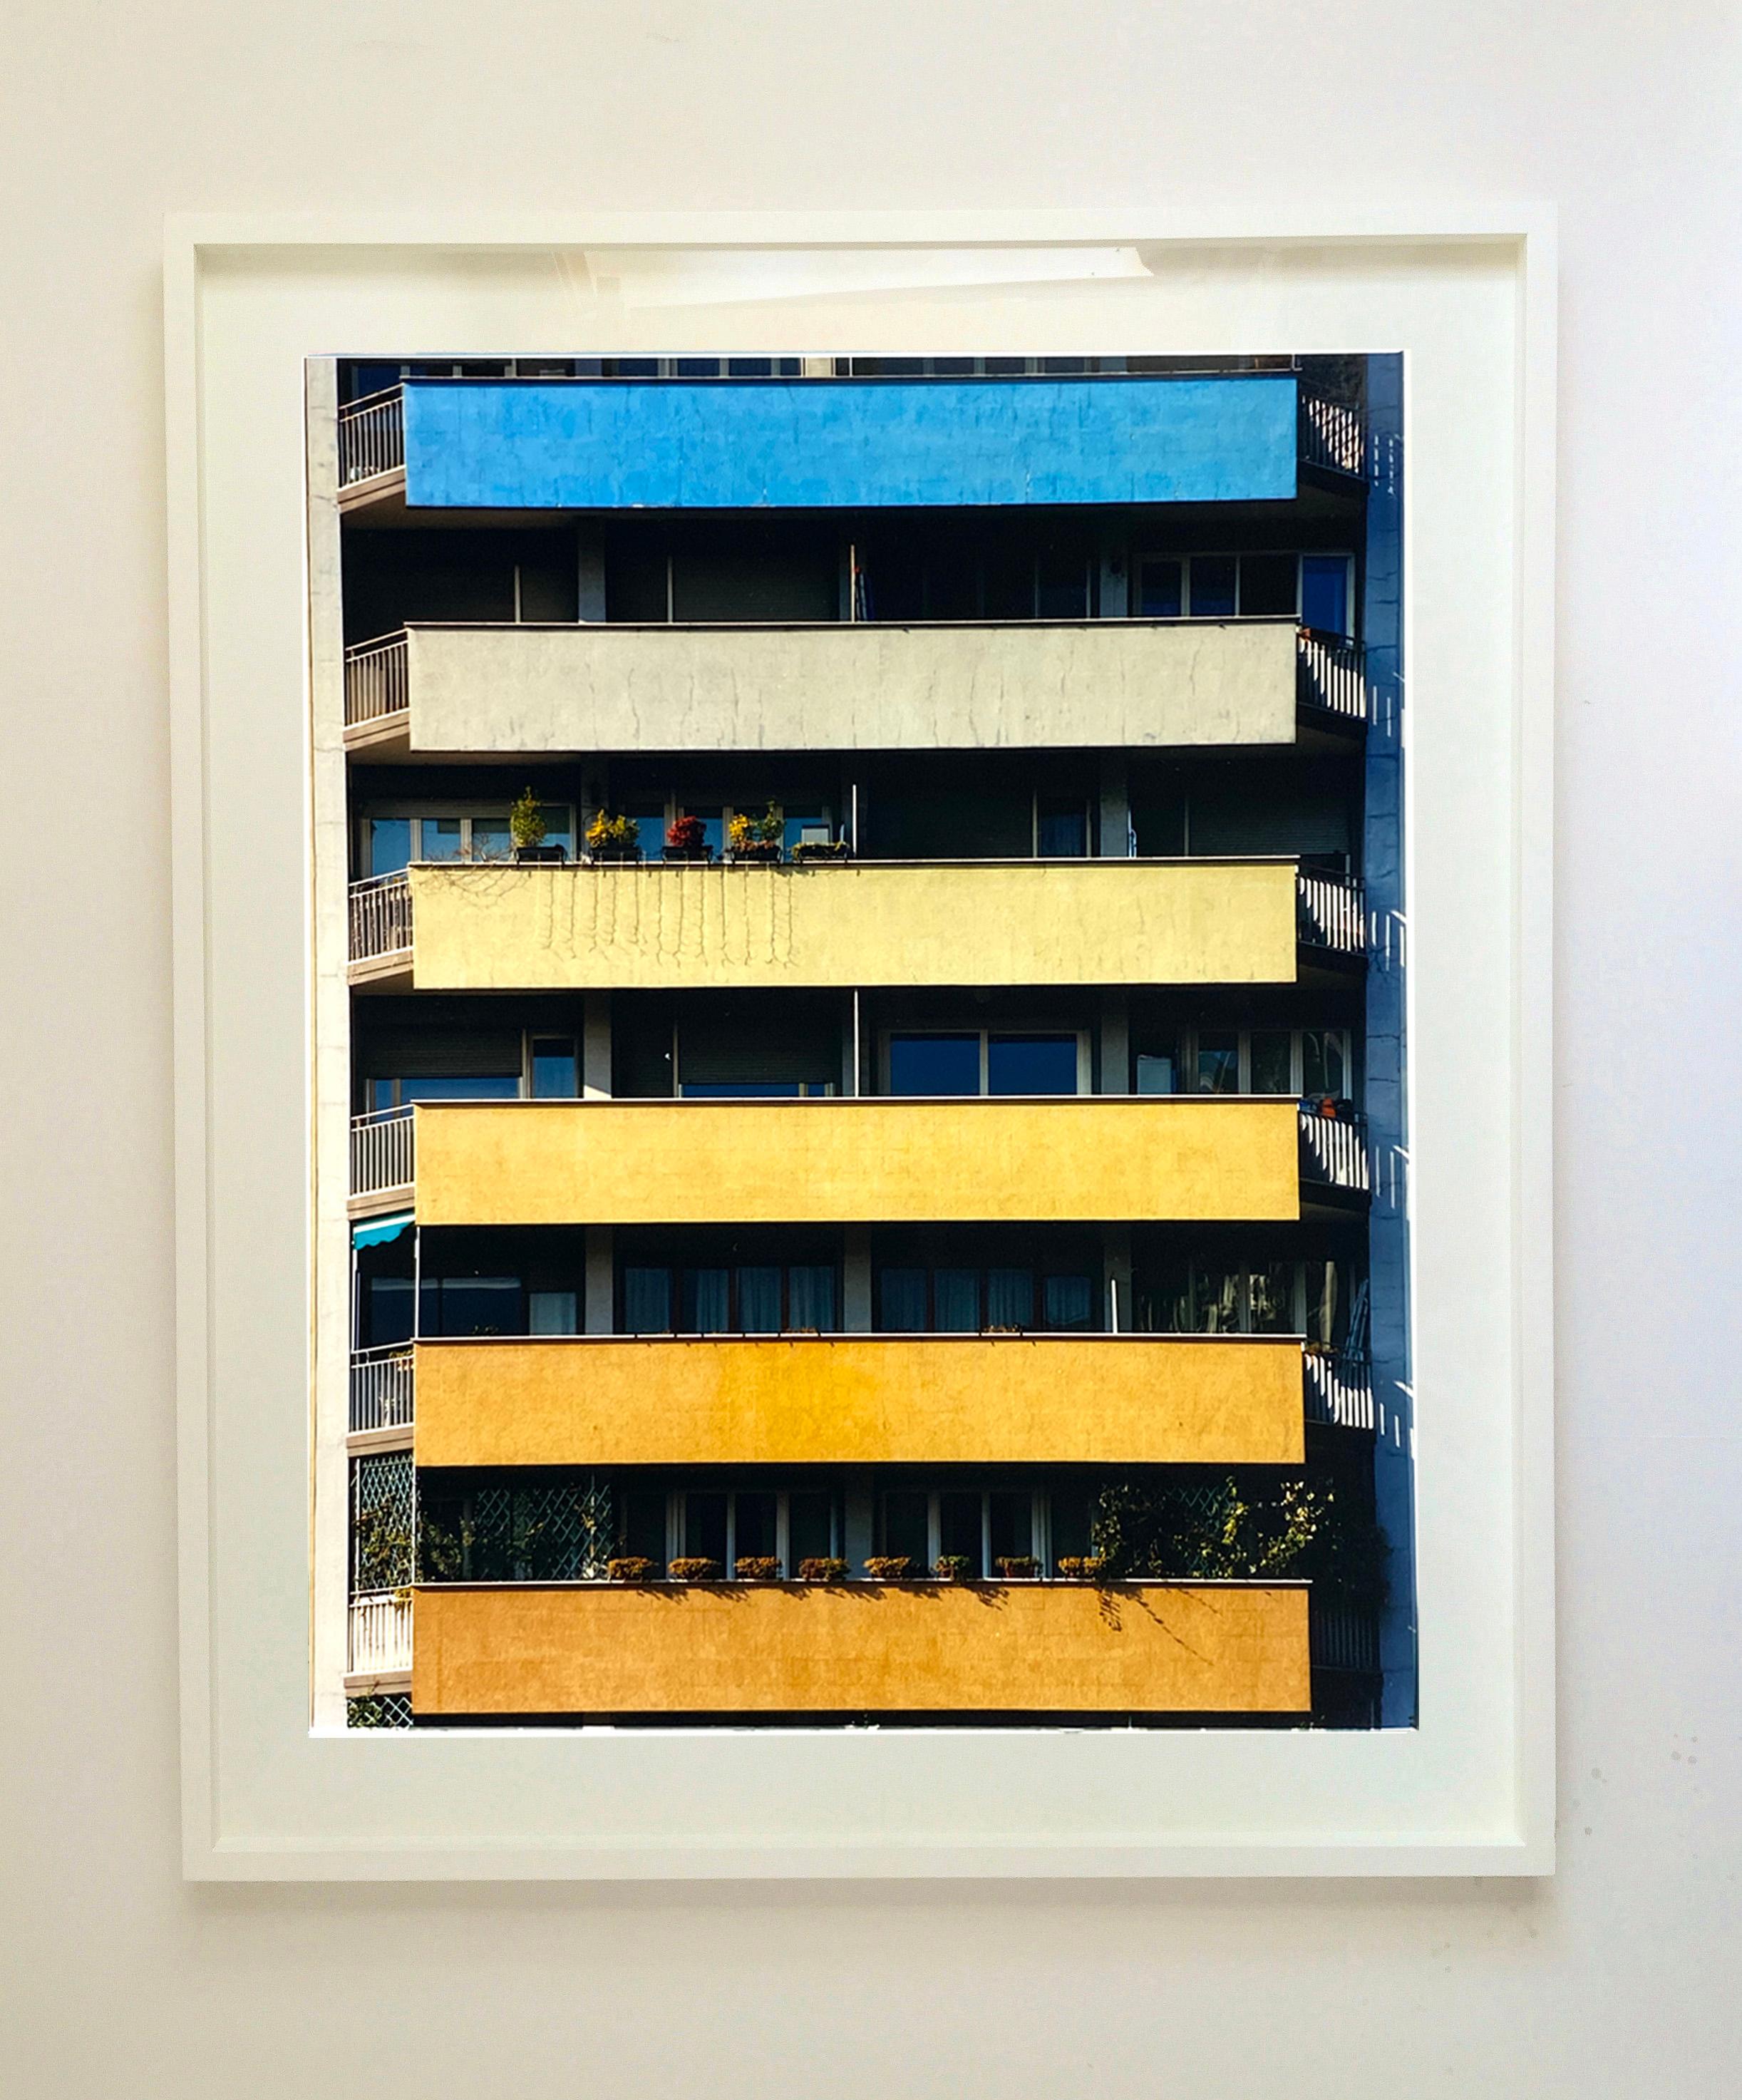 Rainbow Apartments, Mailand - Konzeptionelle architektonische Farbfotografie (Zeitgenössisch), Photograph, von Richard Heeps